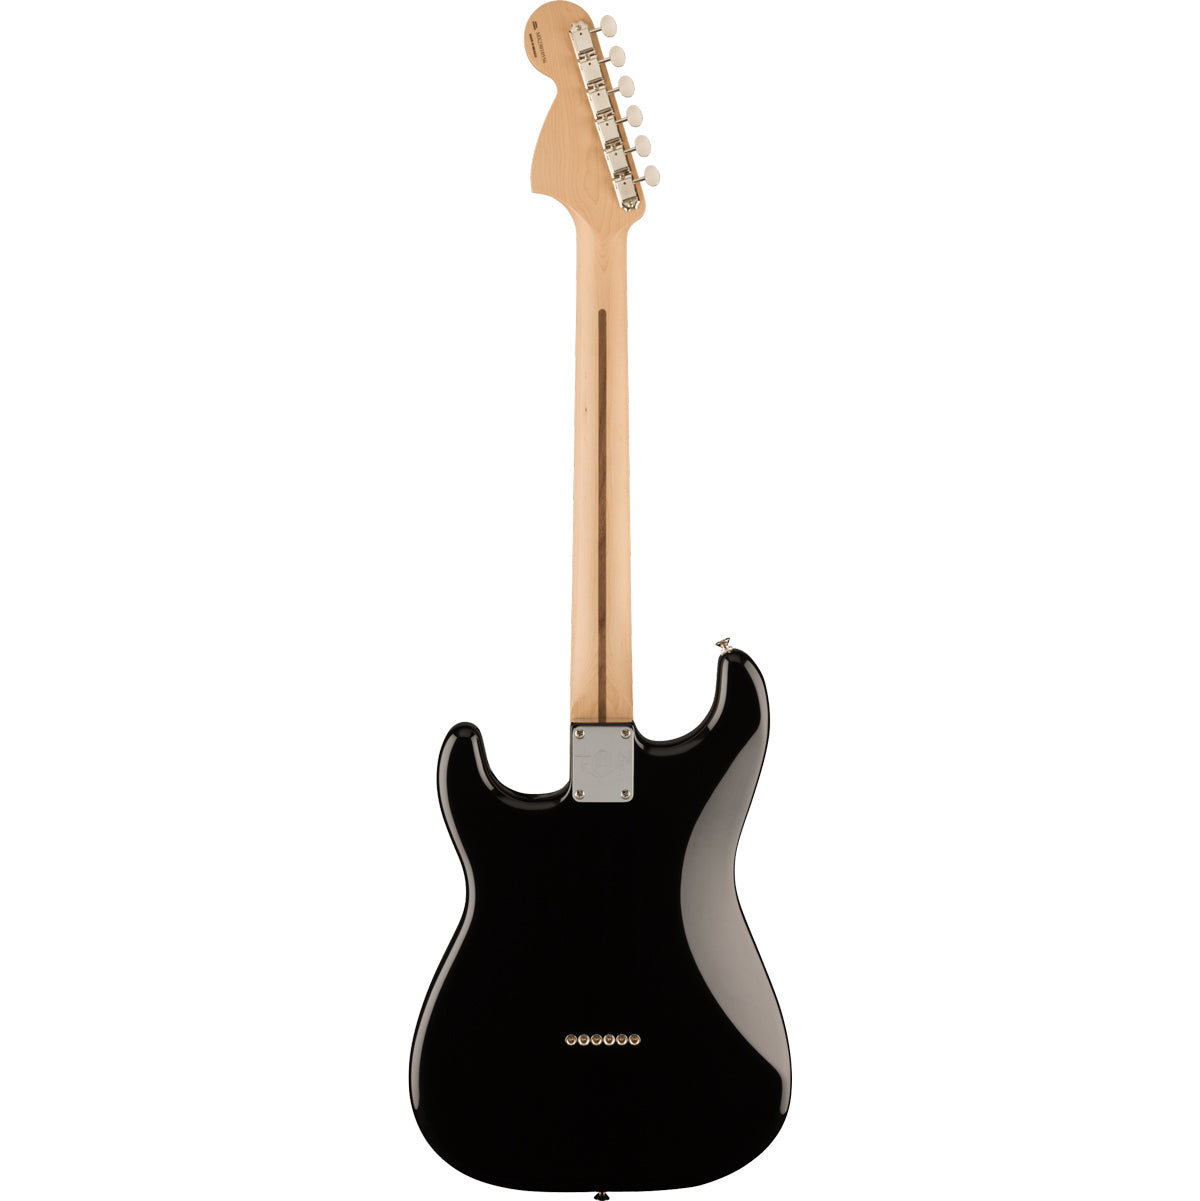 Fender Limited Edition Tom Delonge Stratocaster Rosewood Fingerboard Black